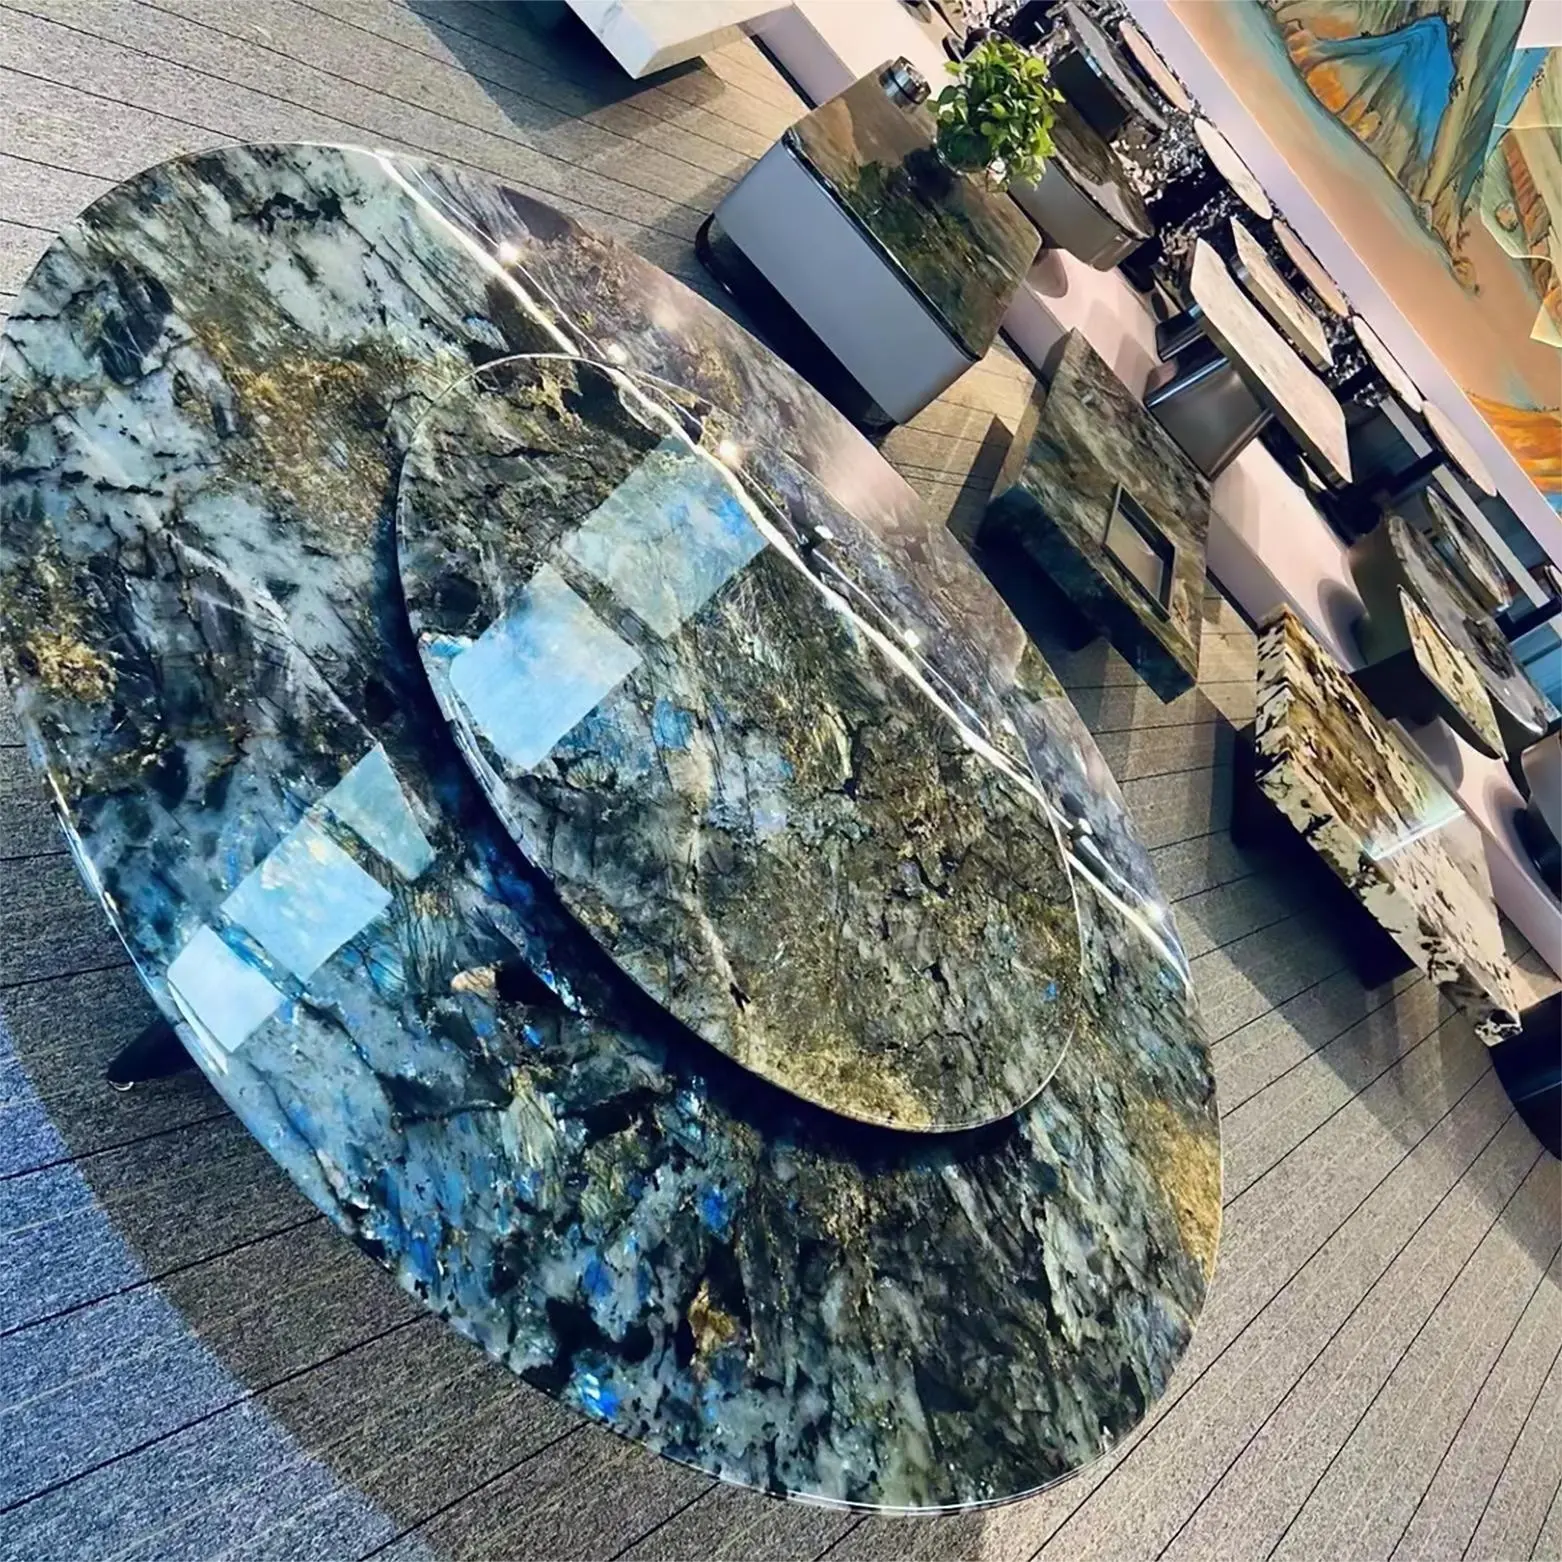 Xu hướng thị trường hiện đại bền đá Granite bảng cho bàn và sàn trang trí